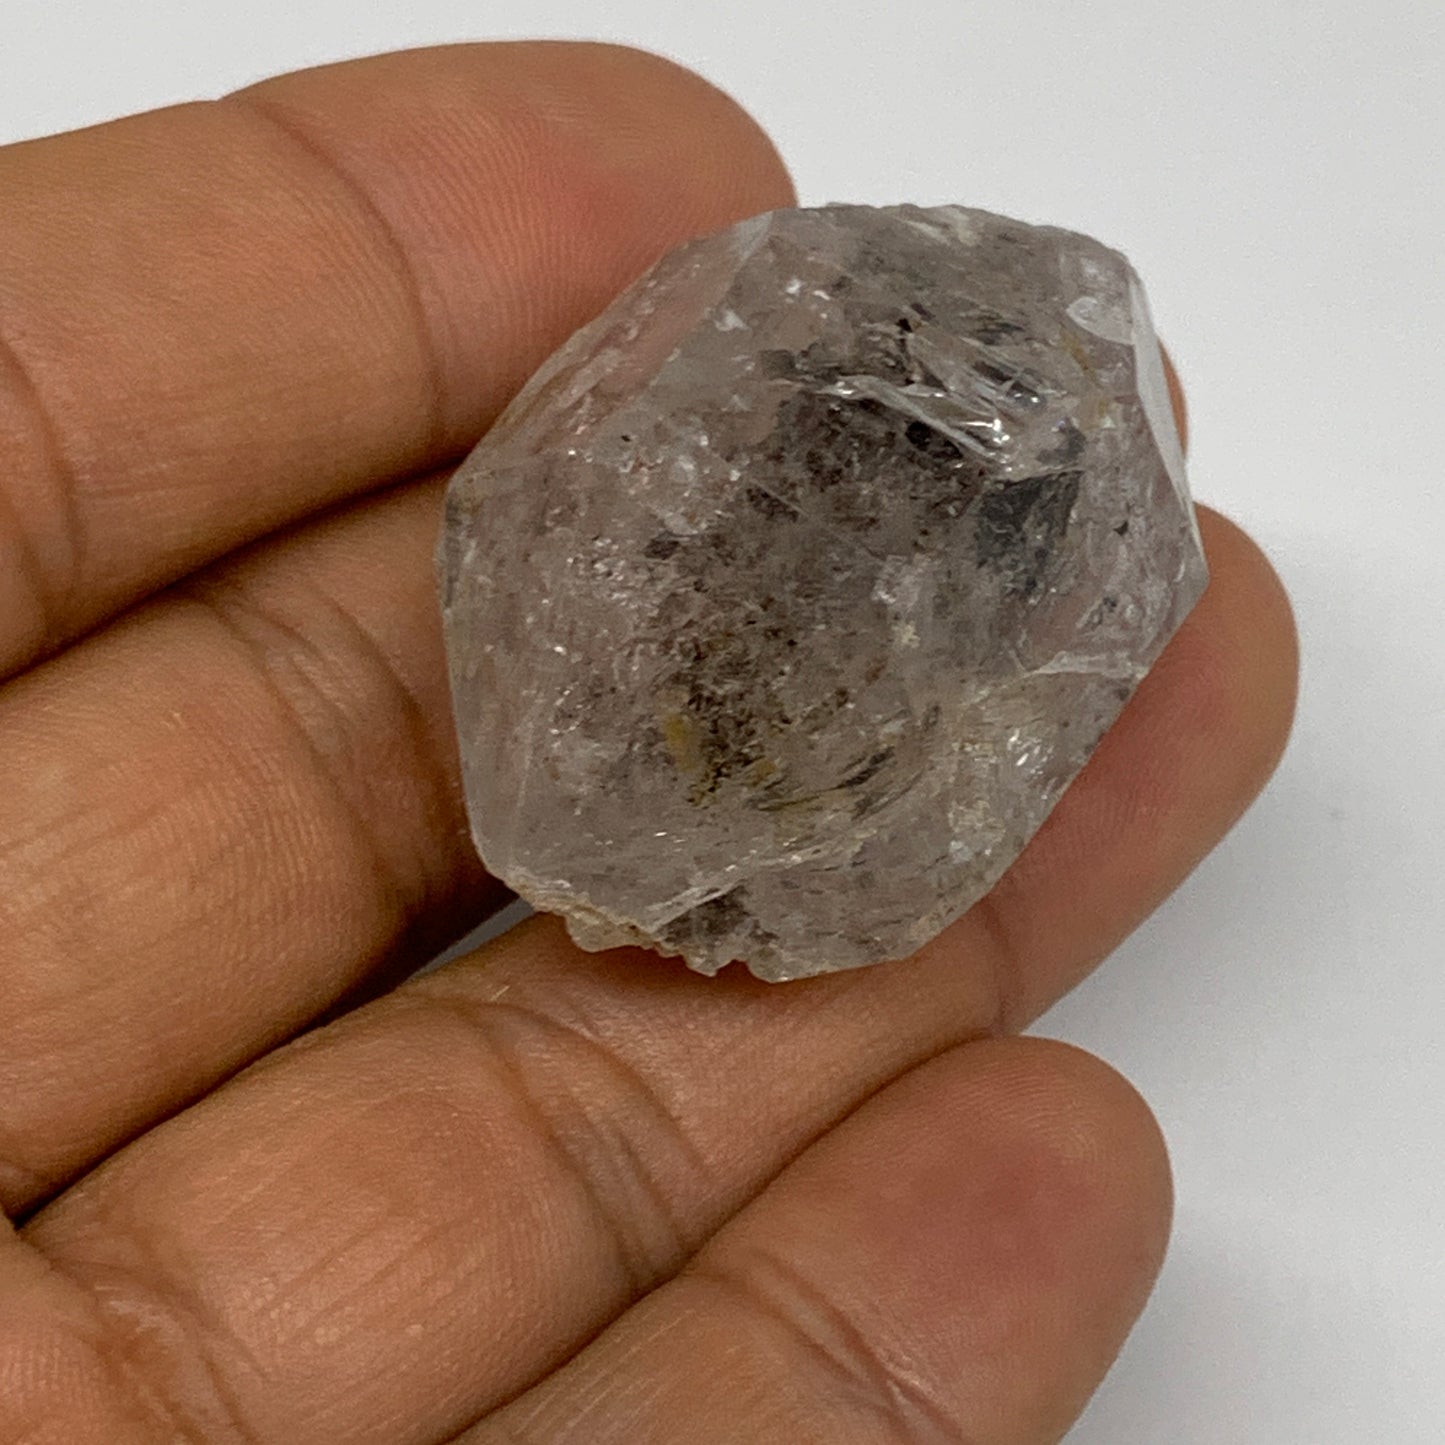 22.9g, 1.5"x1"x0.8", Natural Window Quartz Crystal Terminated @Pakistan,B27529